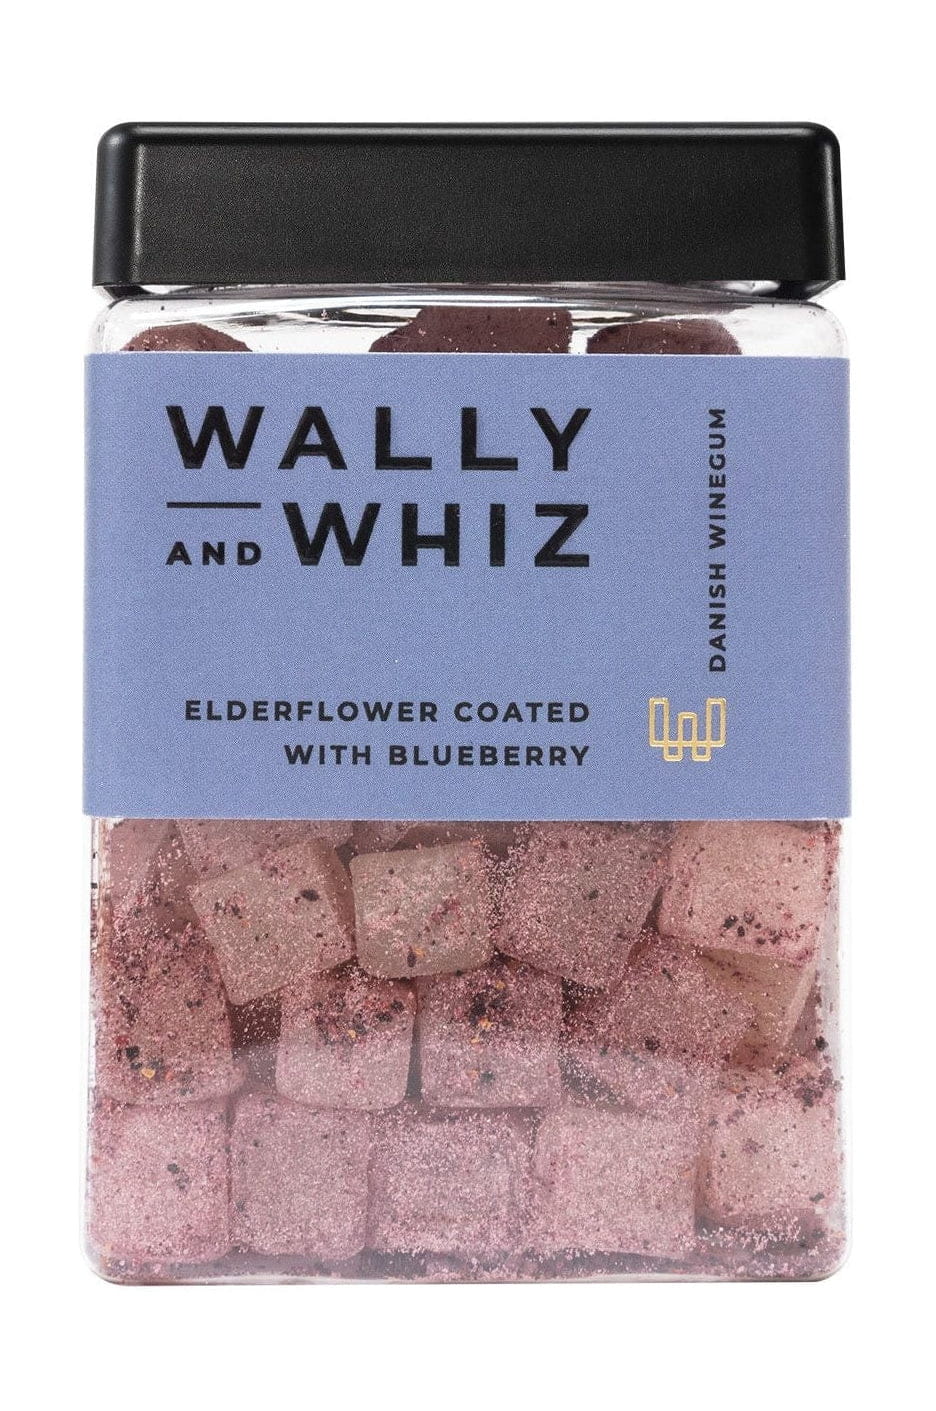 Wally and Whiz Vingummi kubhylla blomma med blåbär, 240 g